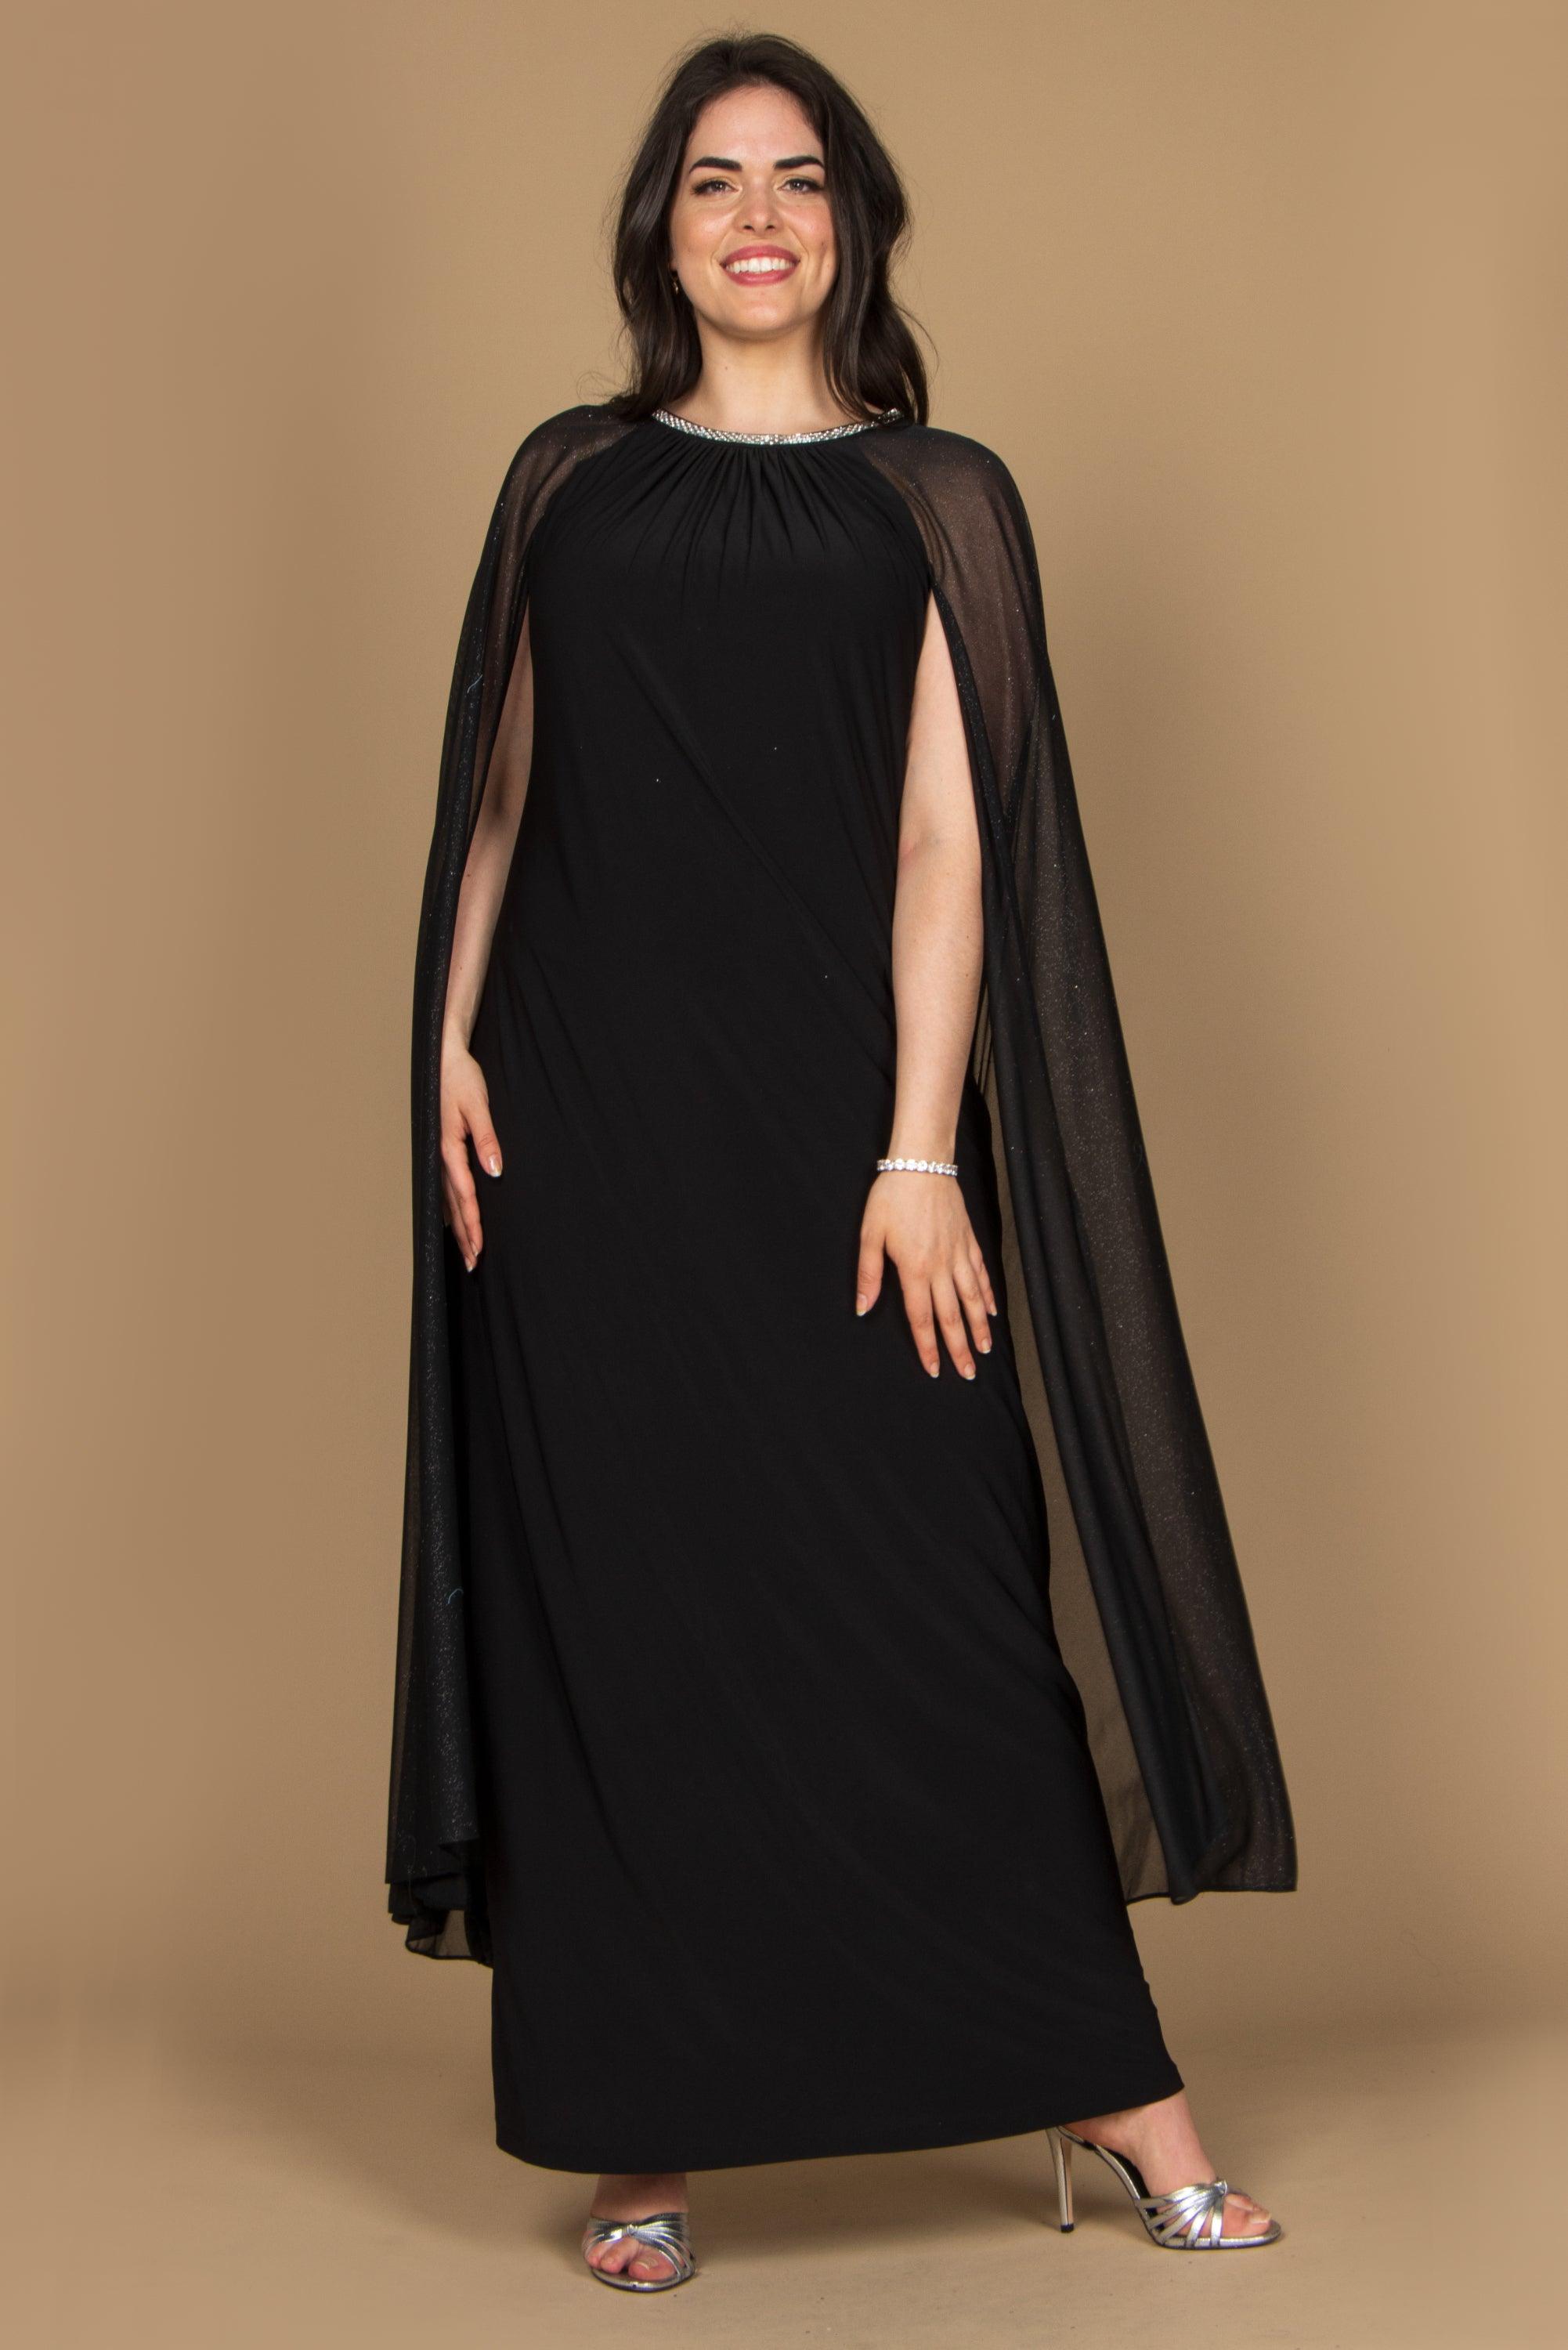 randm richards long plus size formal cape dress 2662w the dress outlet 1